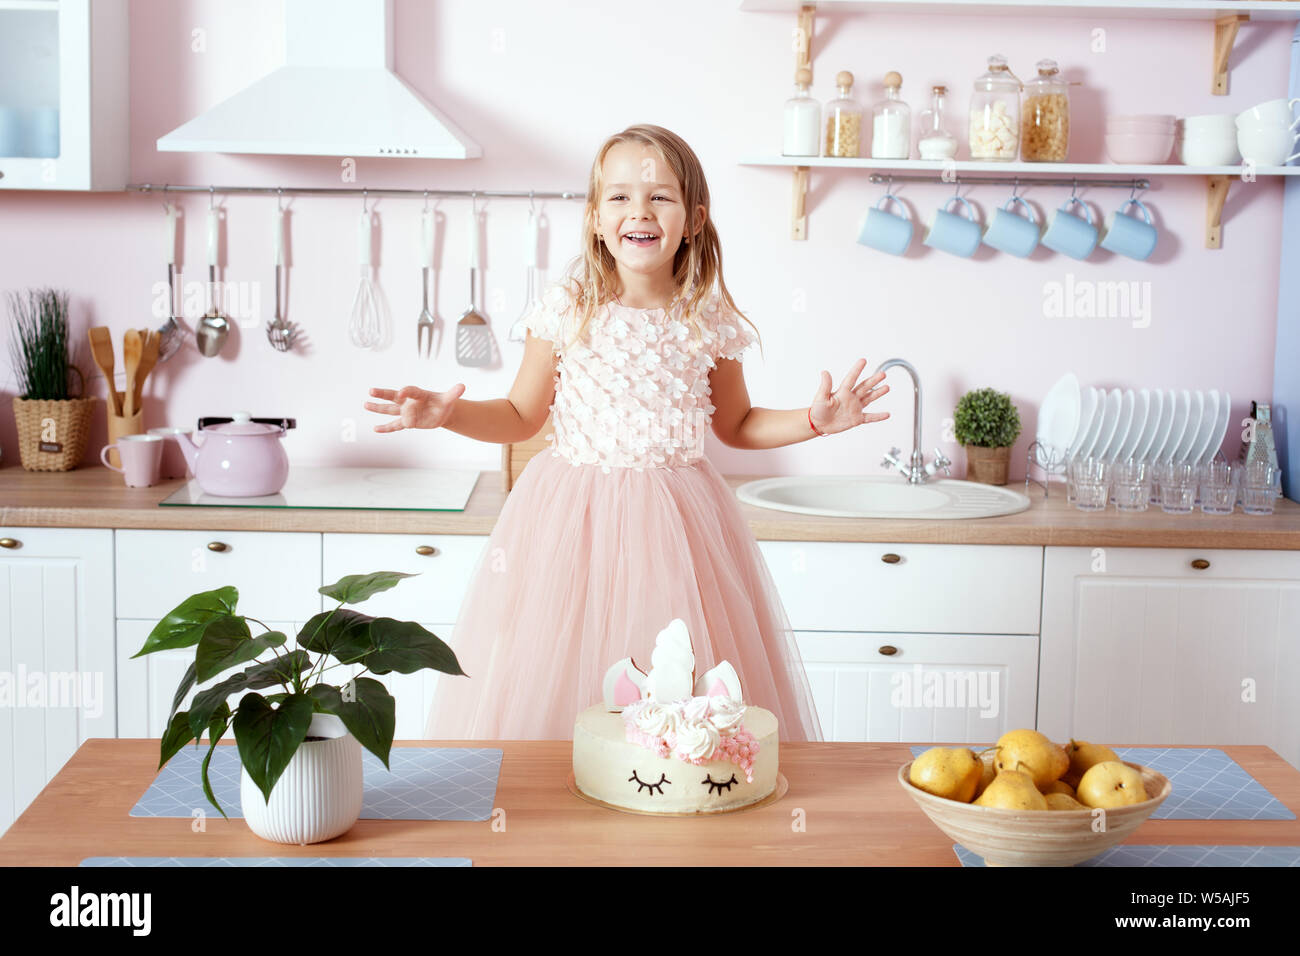 Kleines Mädchen in einem schönen Kleid steht in der Küche an den Tisch. Auf dem Tisch ist eine Geburtstagstorte. Stockfoto